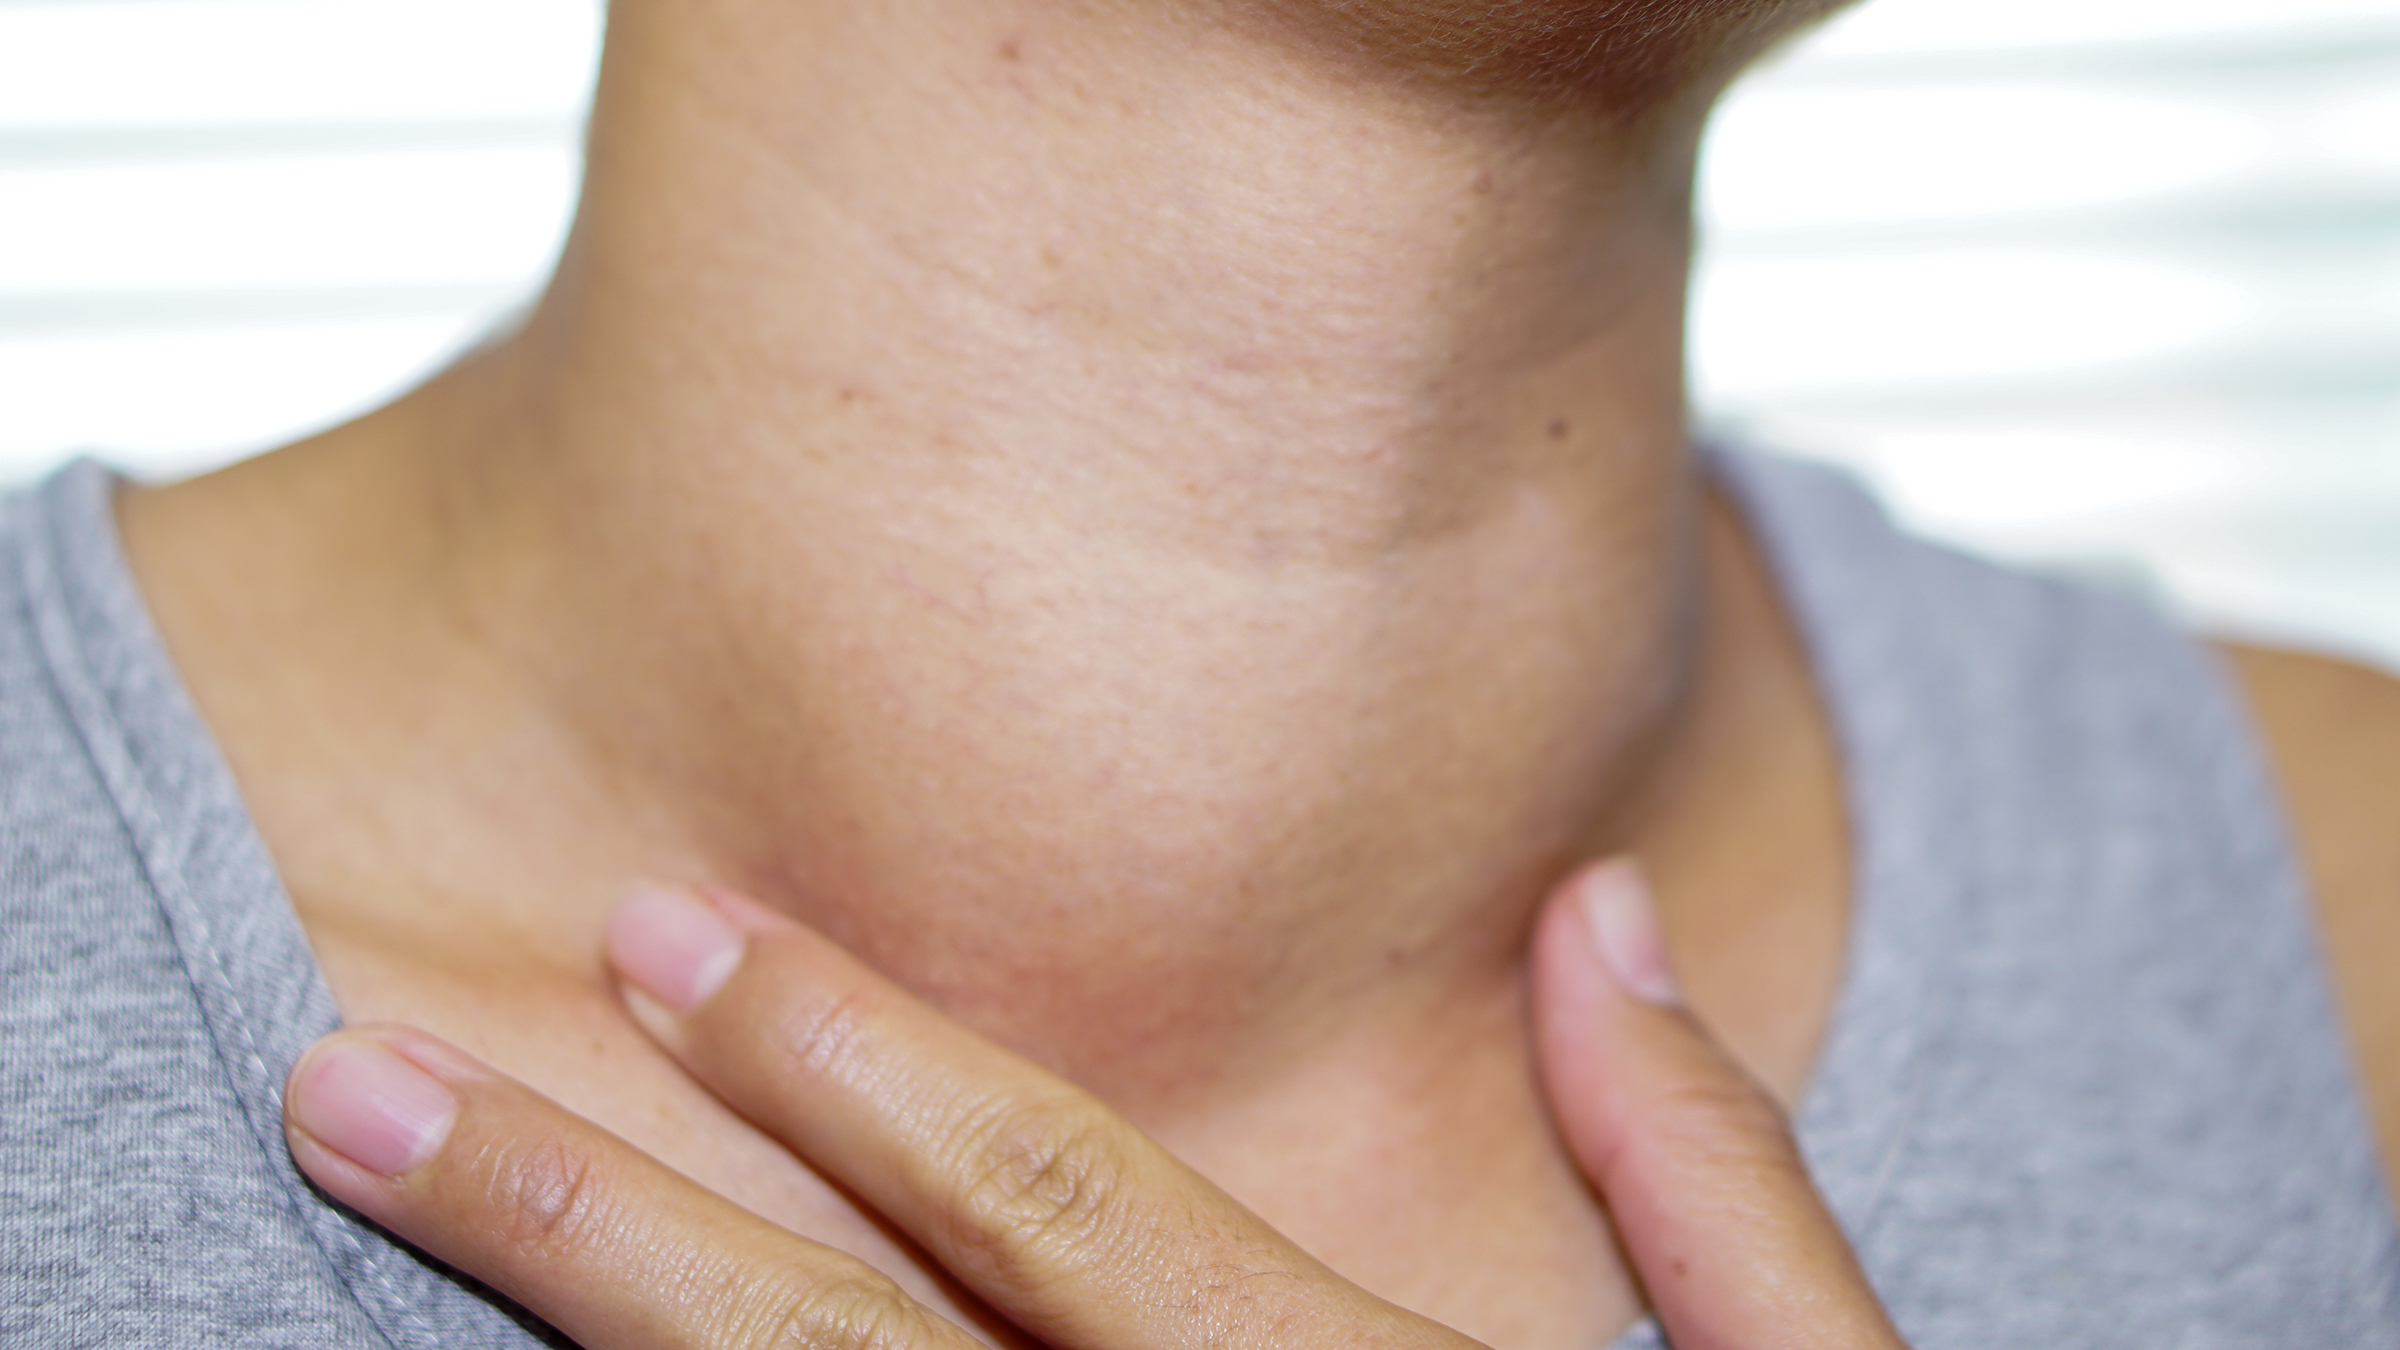 Symptoms of Hypothyroidism (underactive thyroid)